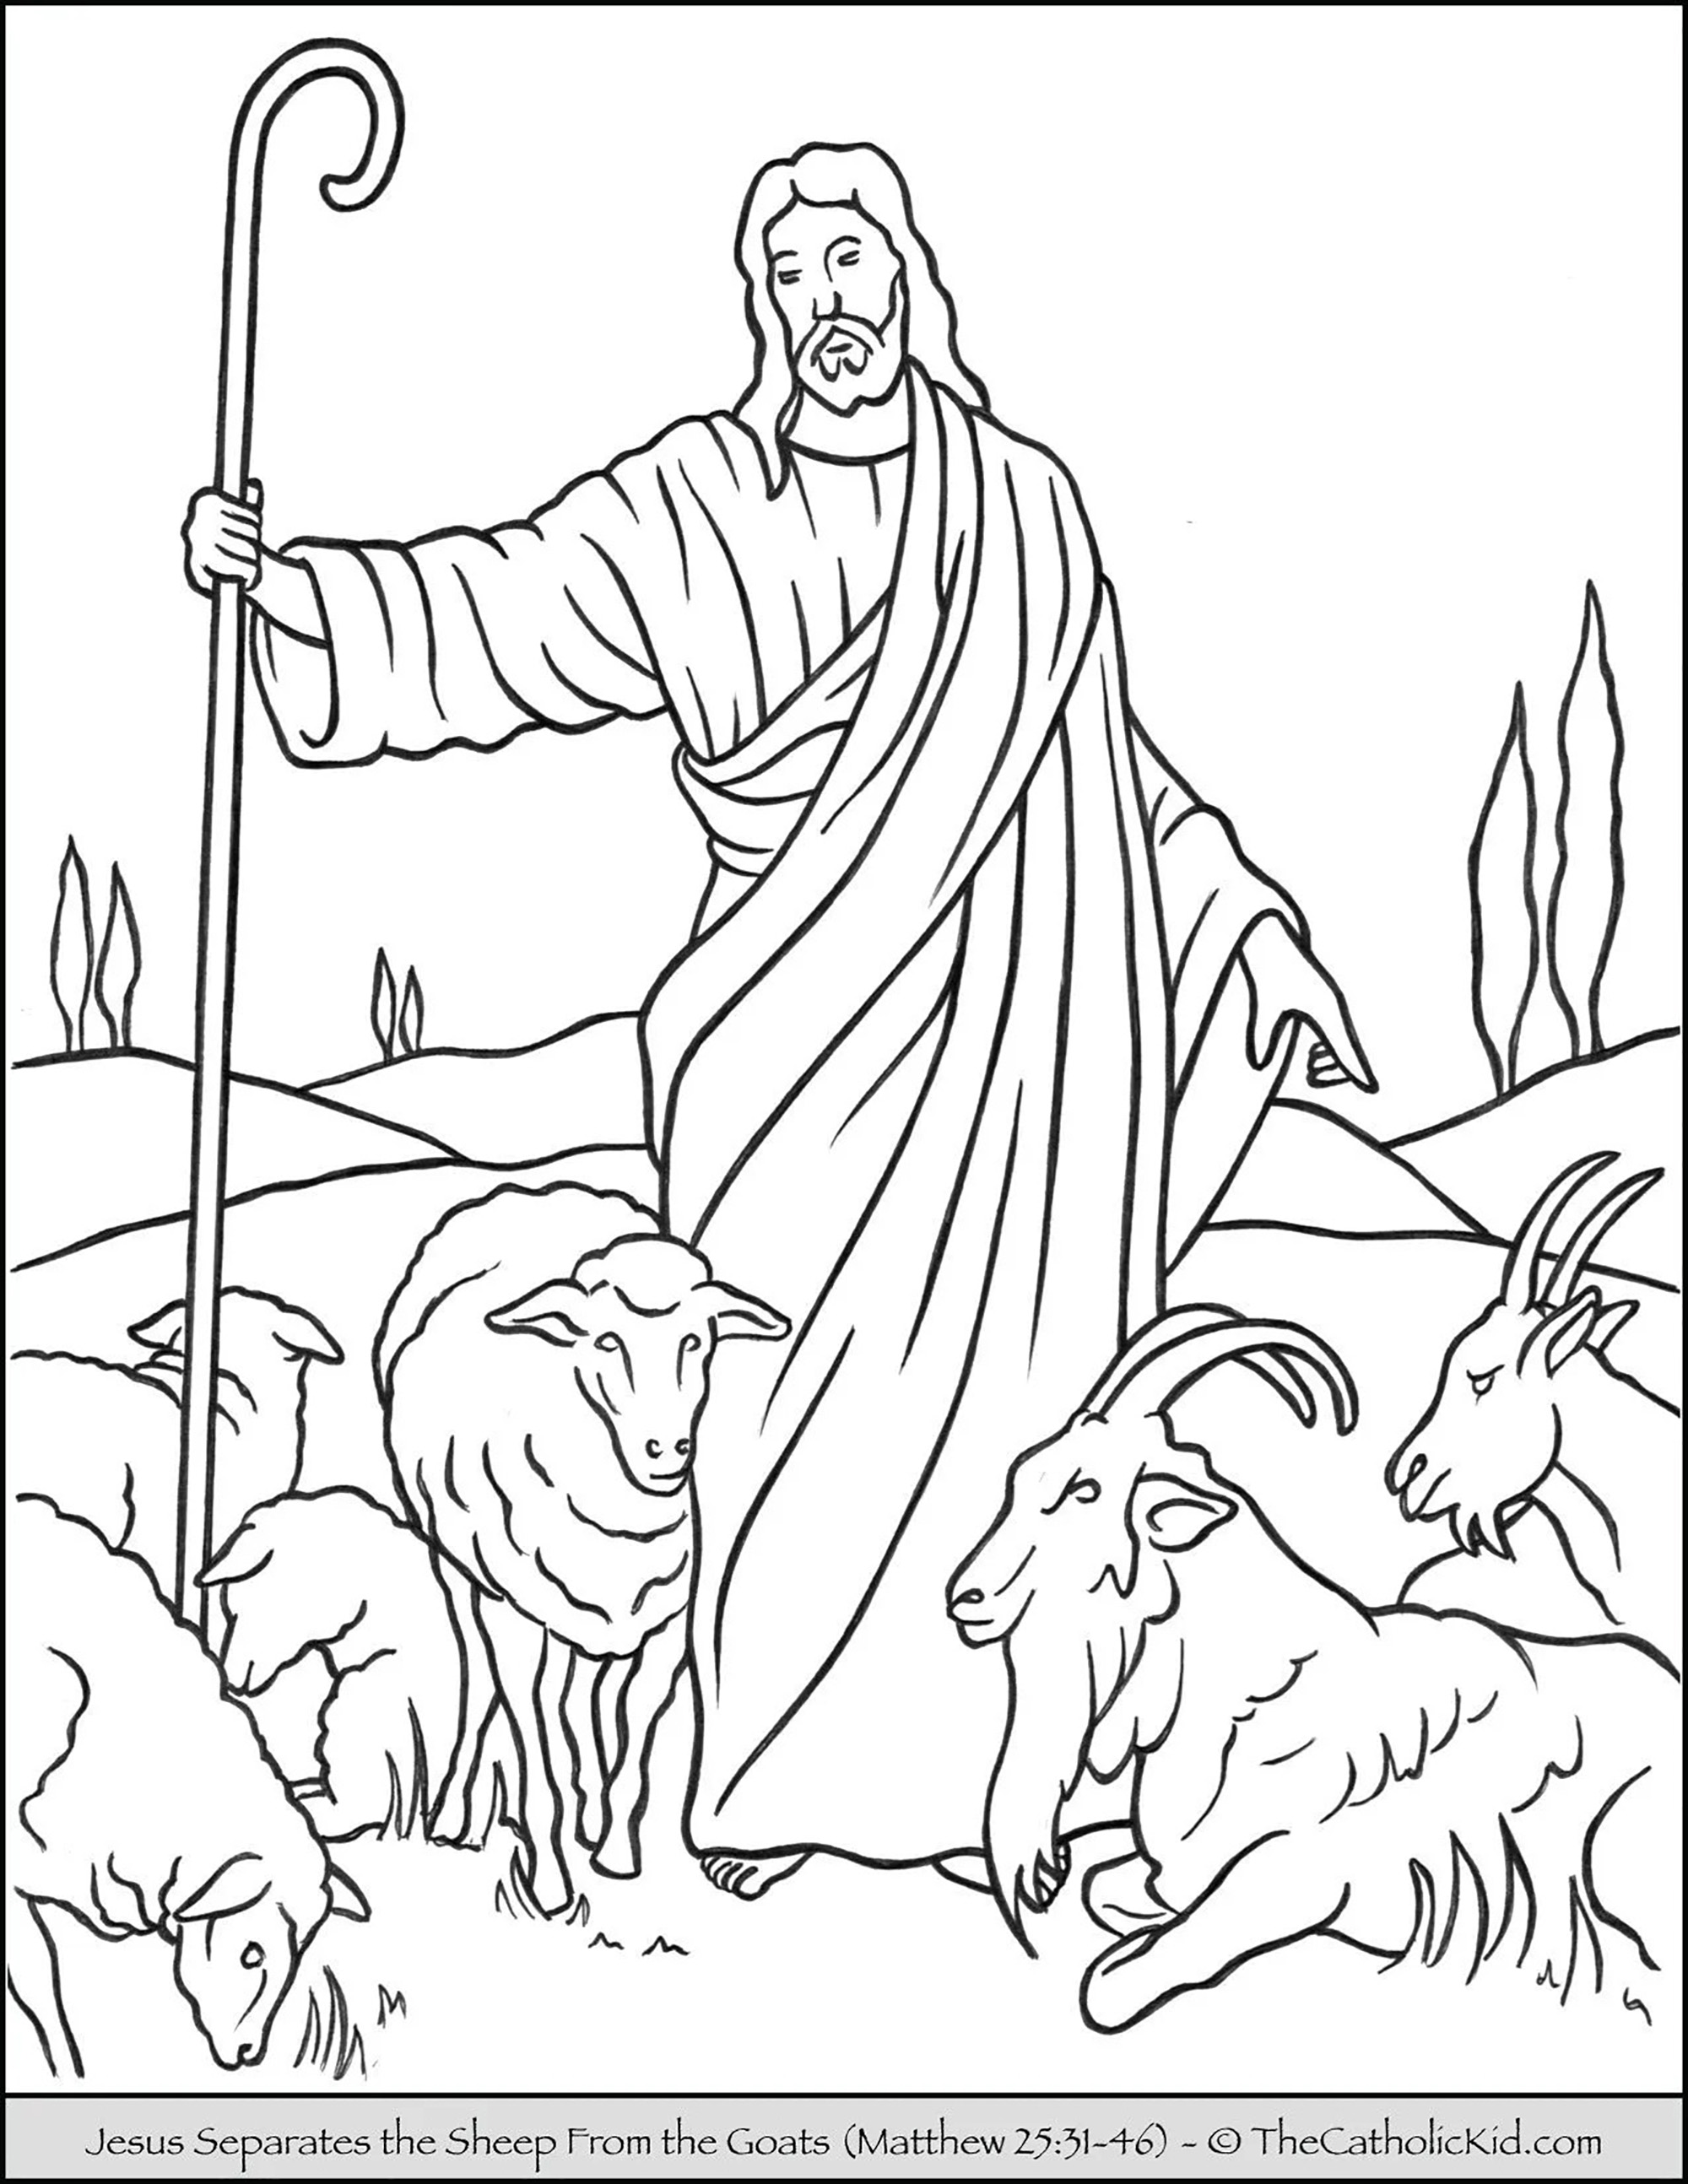 Jesus separa as ovelhas das cabras. Esta parábola refere-se ao tempo do julgamento. As ovelhas simbolizam aqueles que seguem e obedecem a Cristo, enquanto os bodes representam aqueles que optaram por não seguir Jesus e o seu exemplo na terra (uma testemunha).